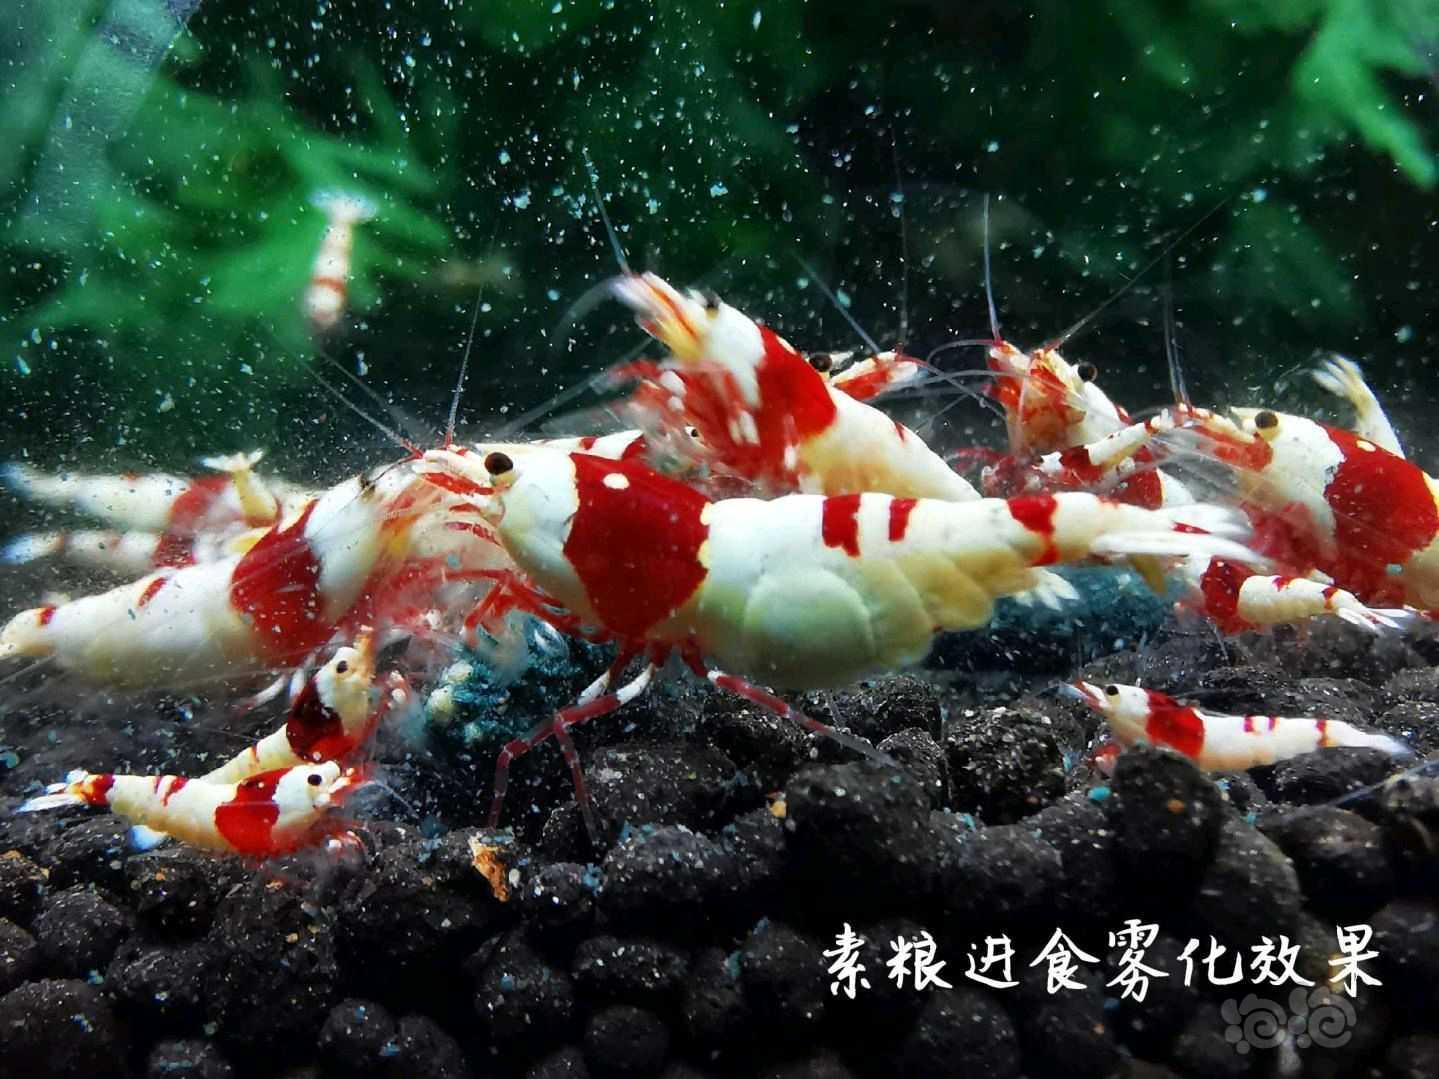 【用品】2021-06-07#RMB拍卖瑾福水晶虾饲料一套-图6